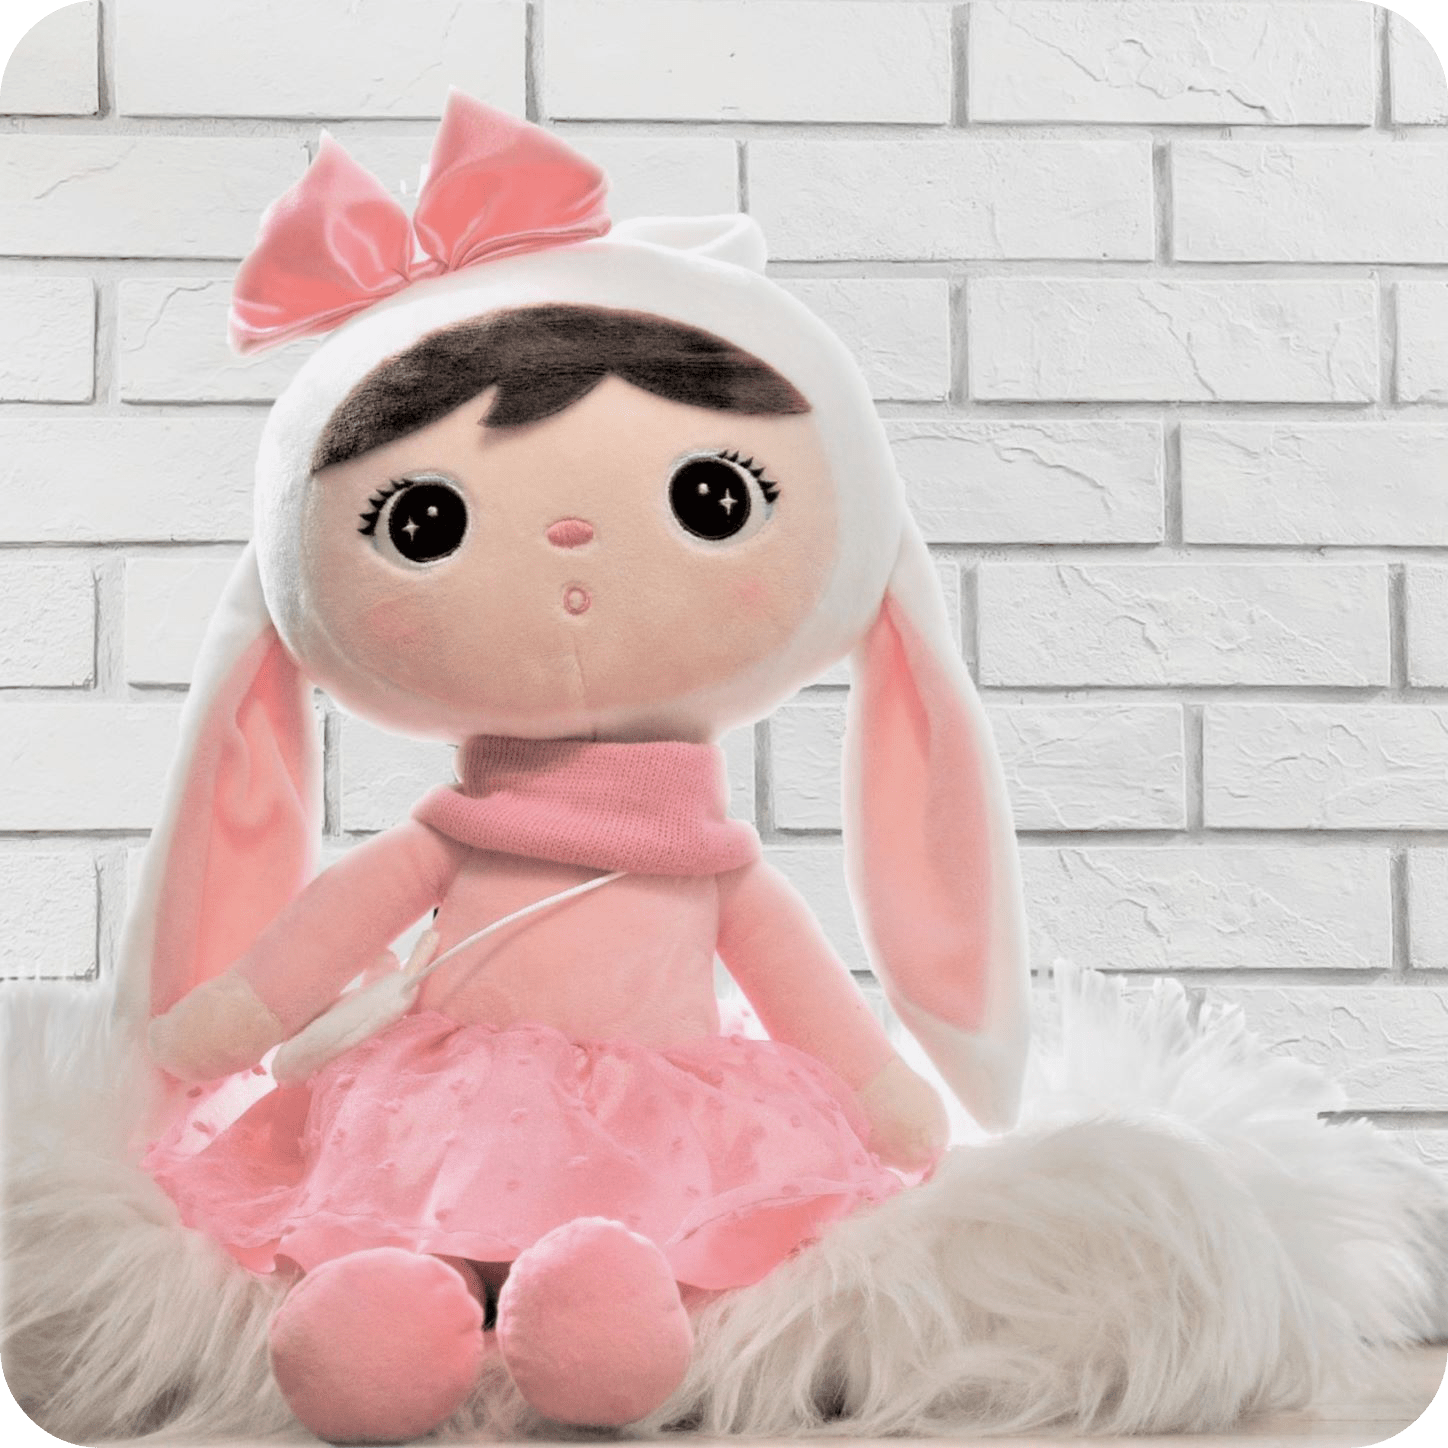 Królik Metoo z różową sukienką i kokardą na głowie. To najpopularniejsza lalka Metoo wybierana na prezent dla dziewczynki.